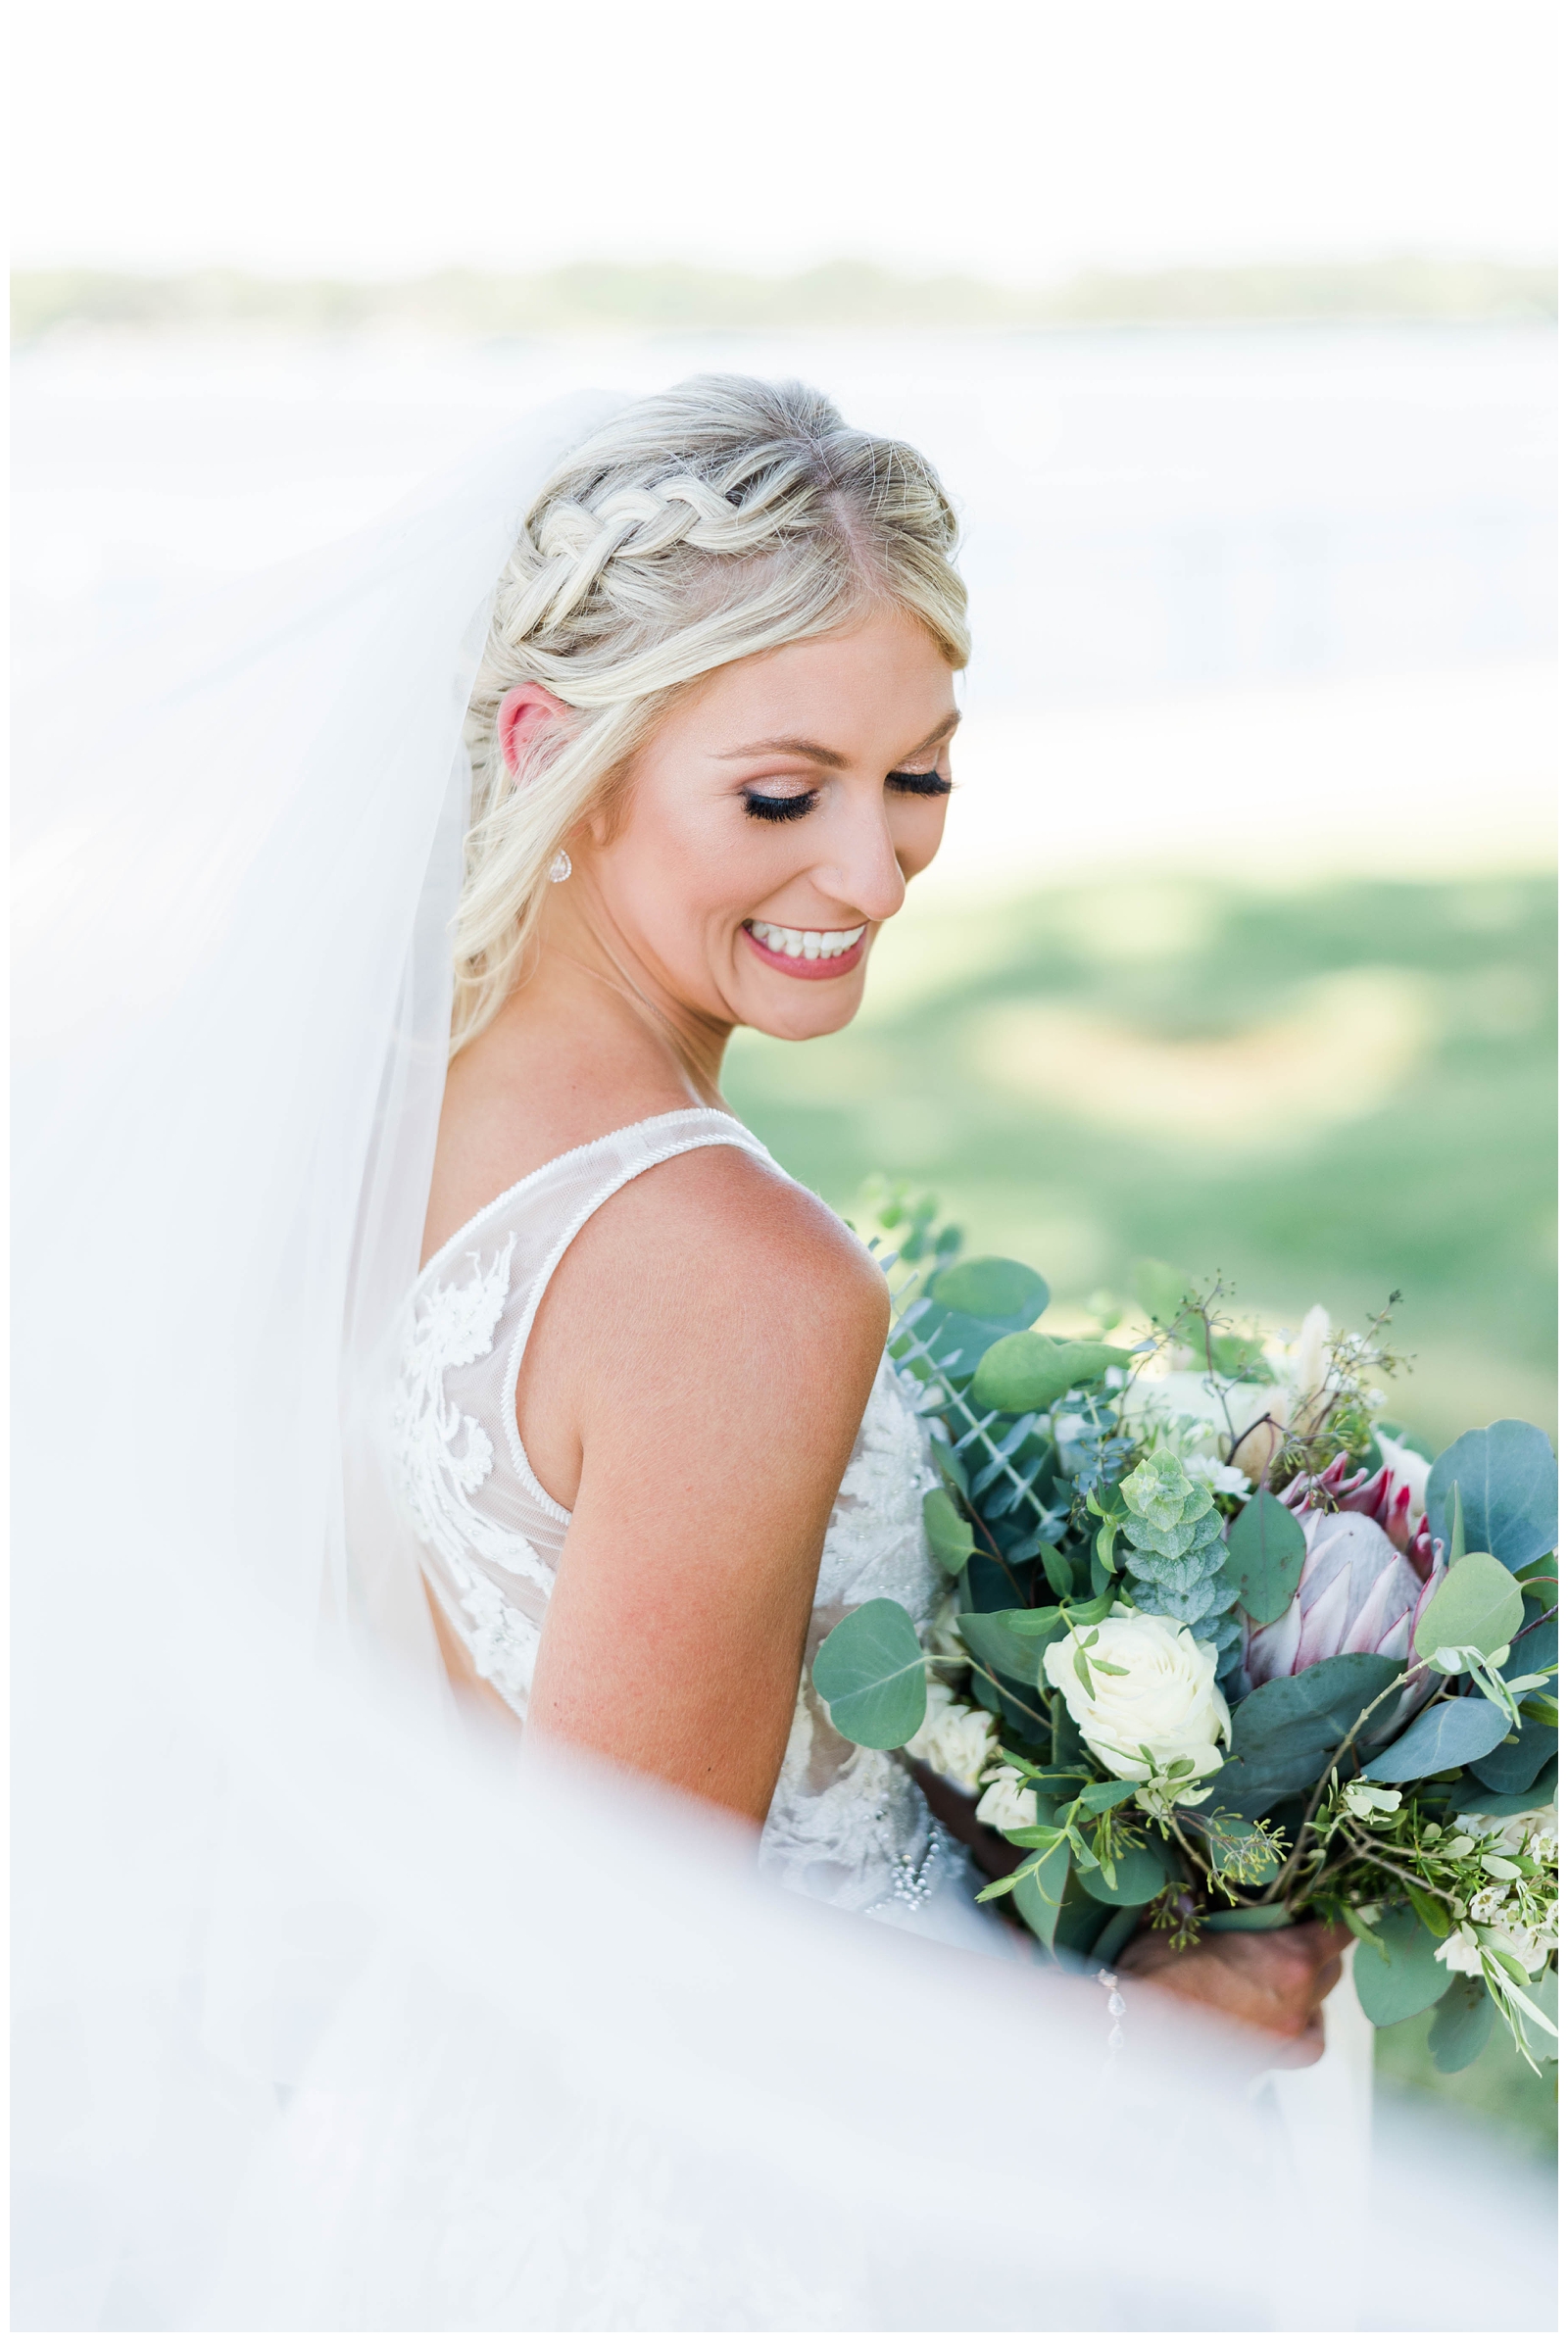 Bridal portrait with flowing veil